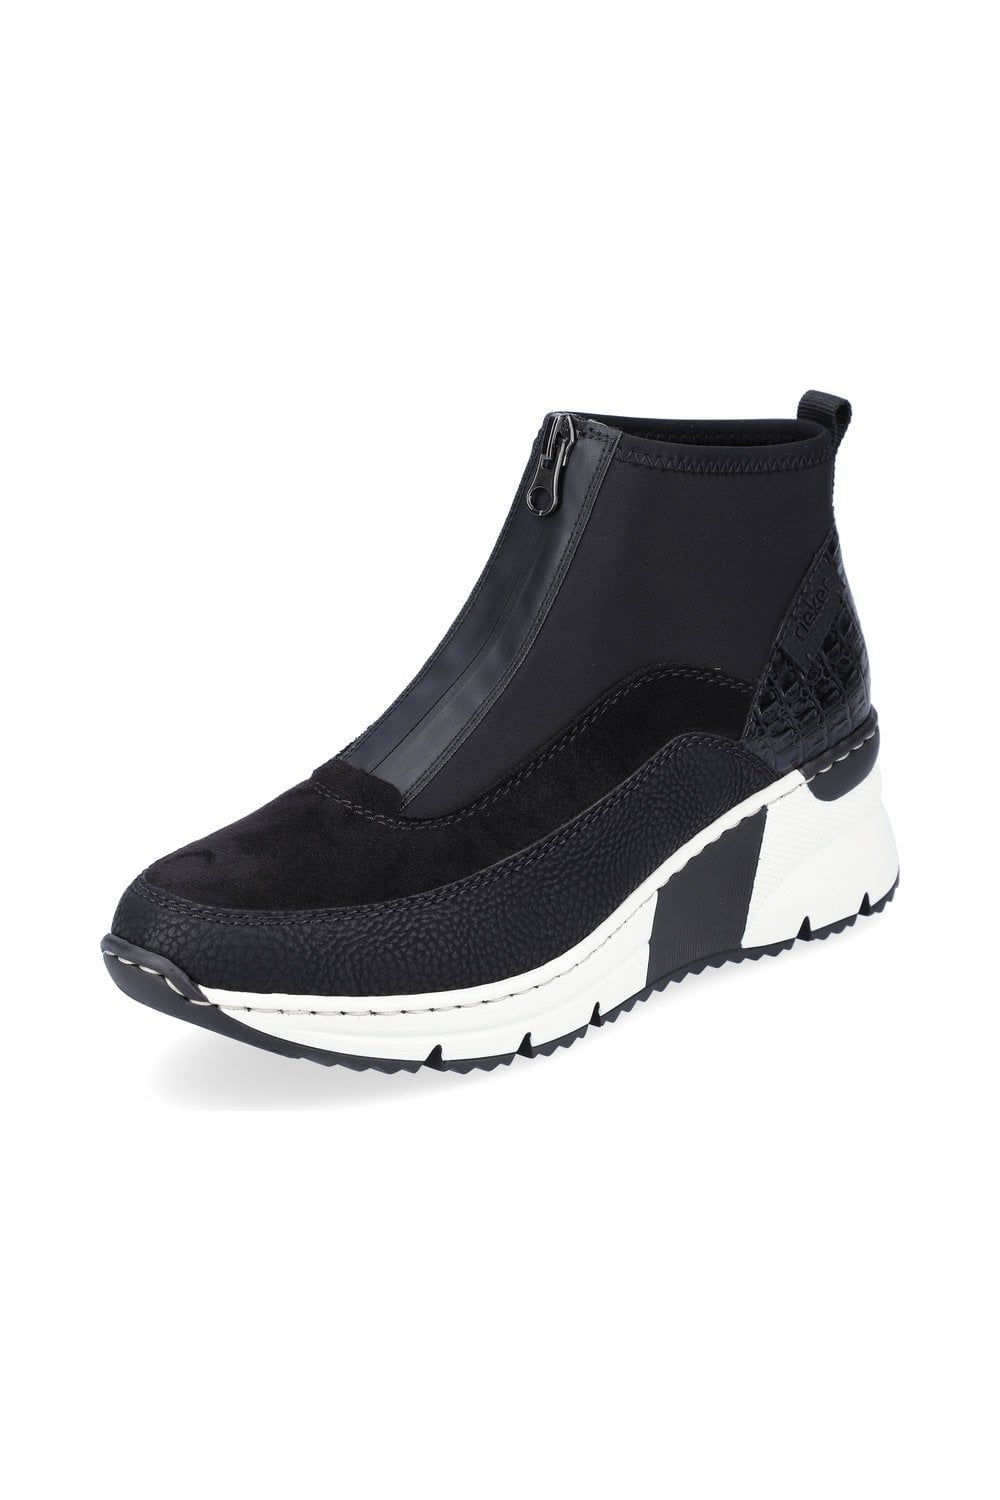 Rieker N6352-00 black ankle boot